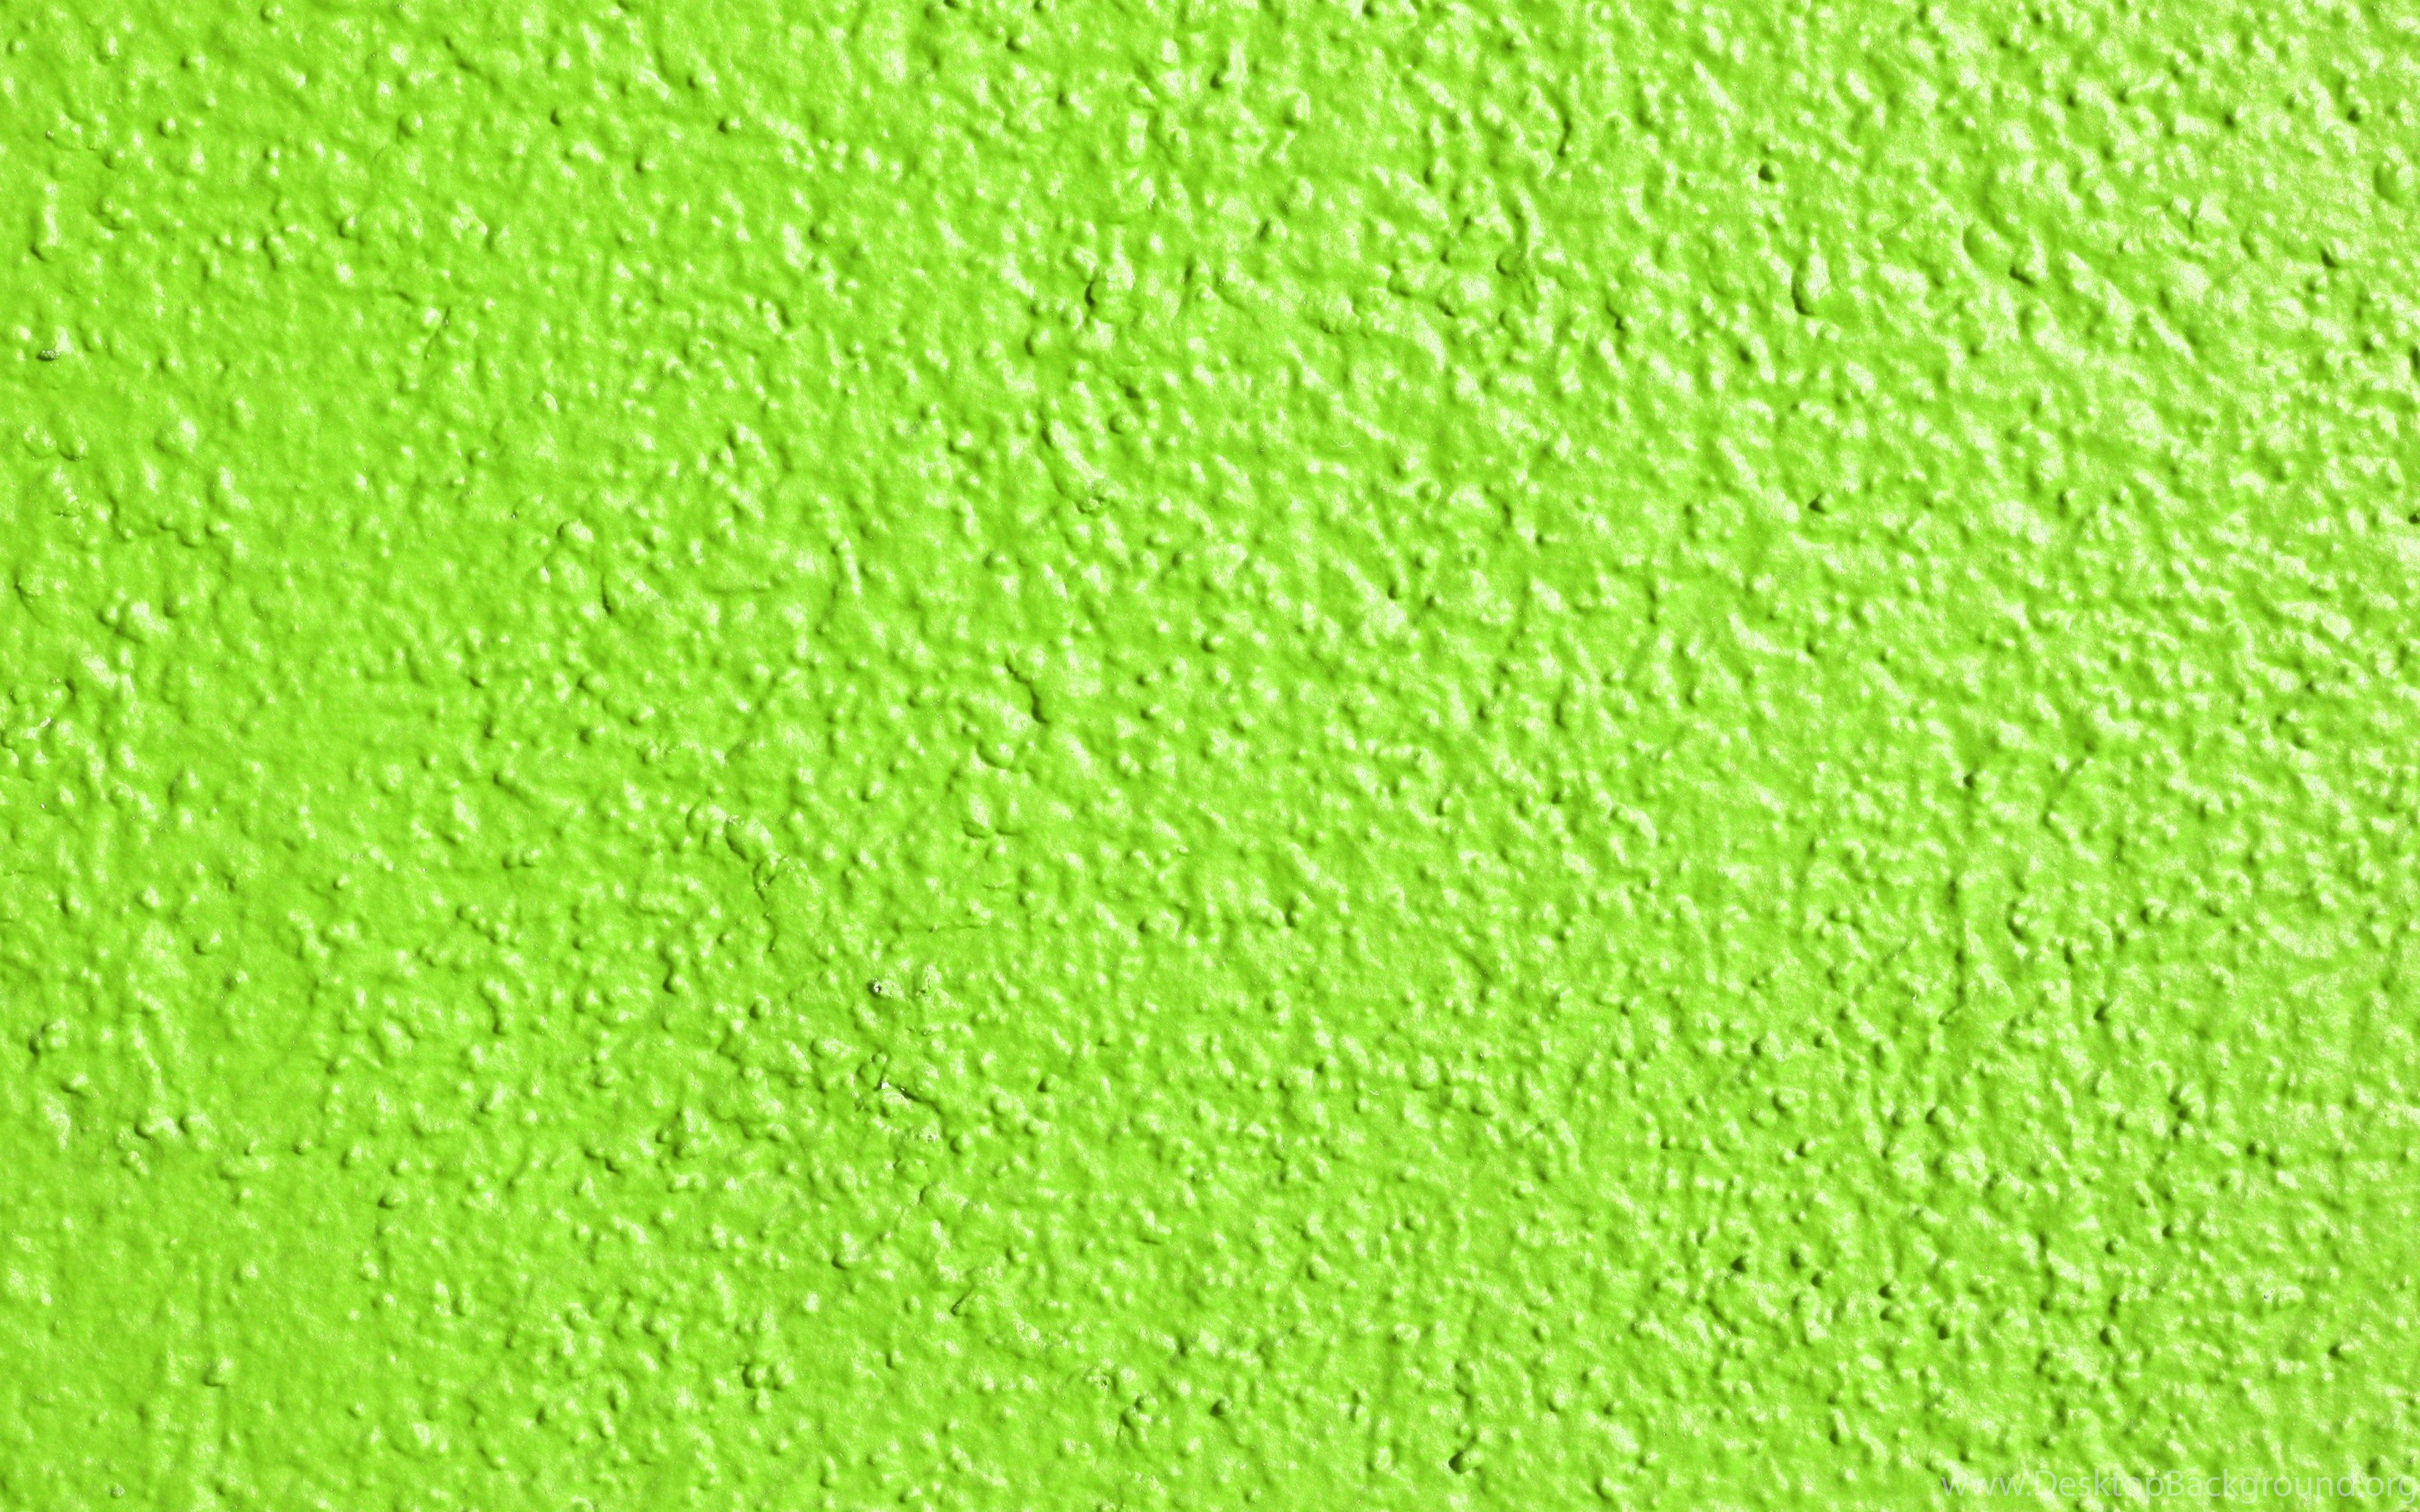 دانلود پس زمینه بافت سبز روشن ساده برای طراحی منوها